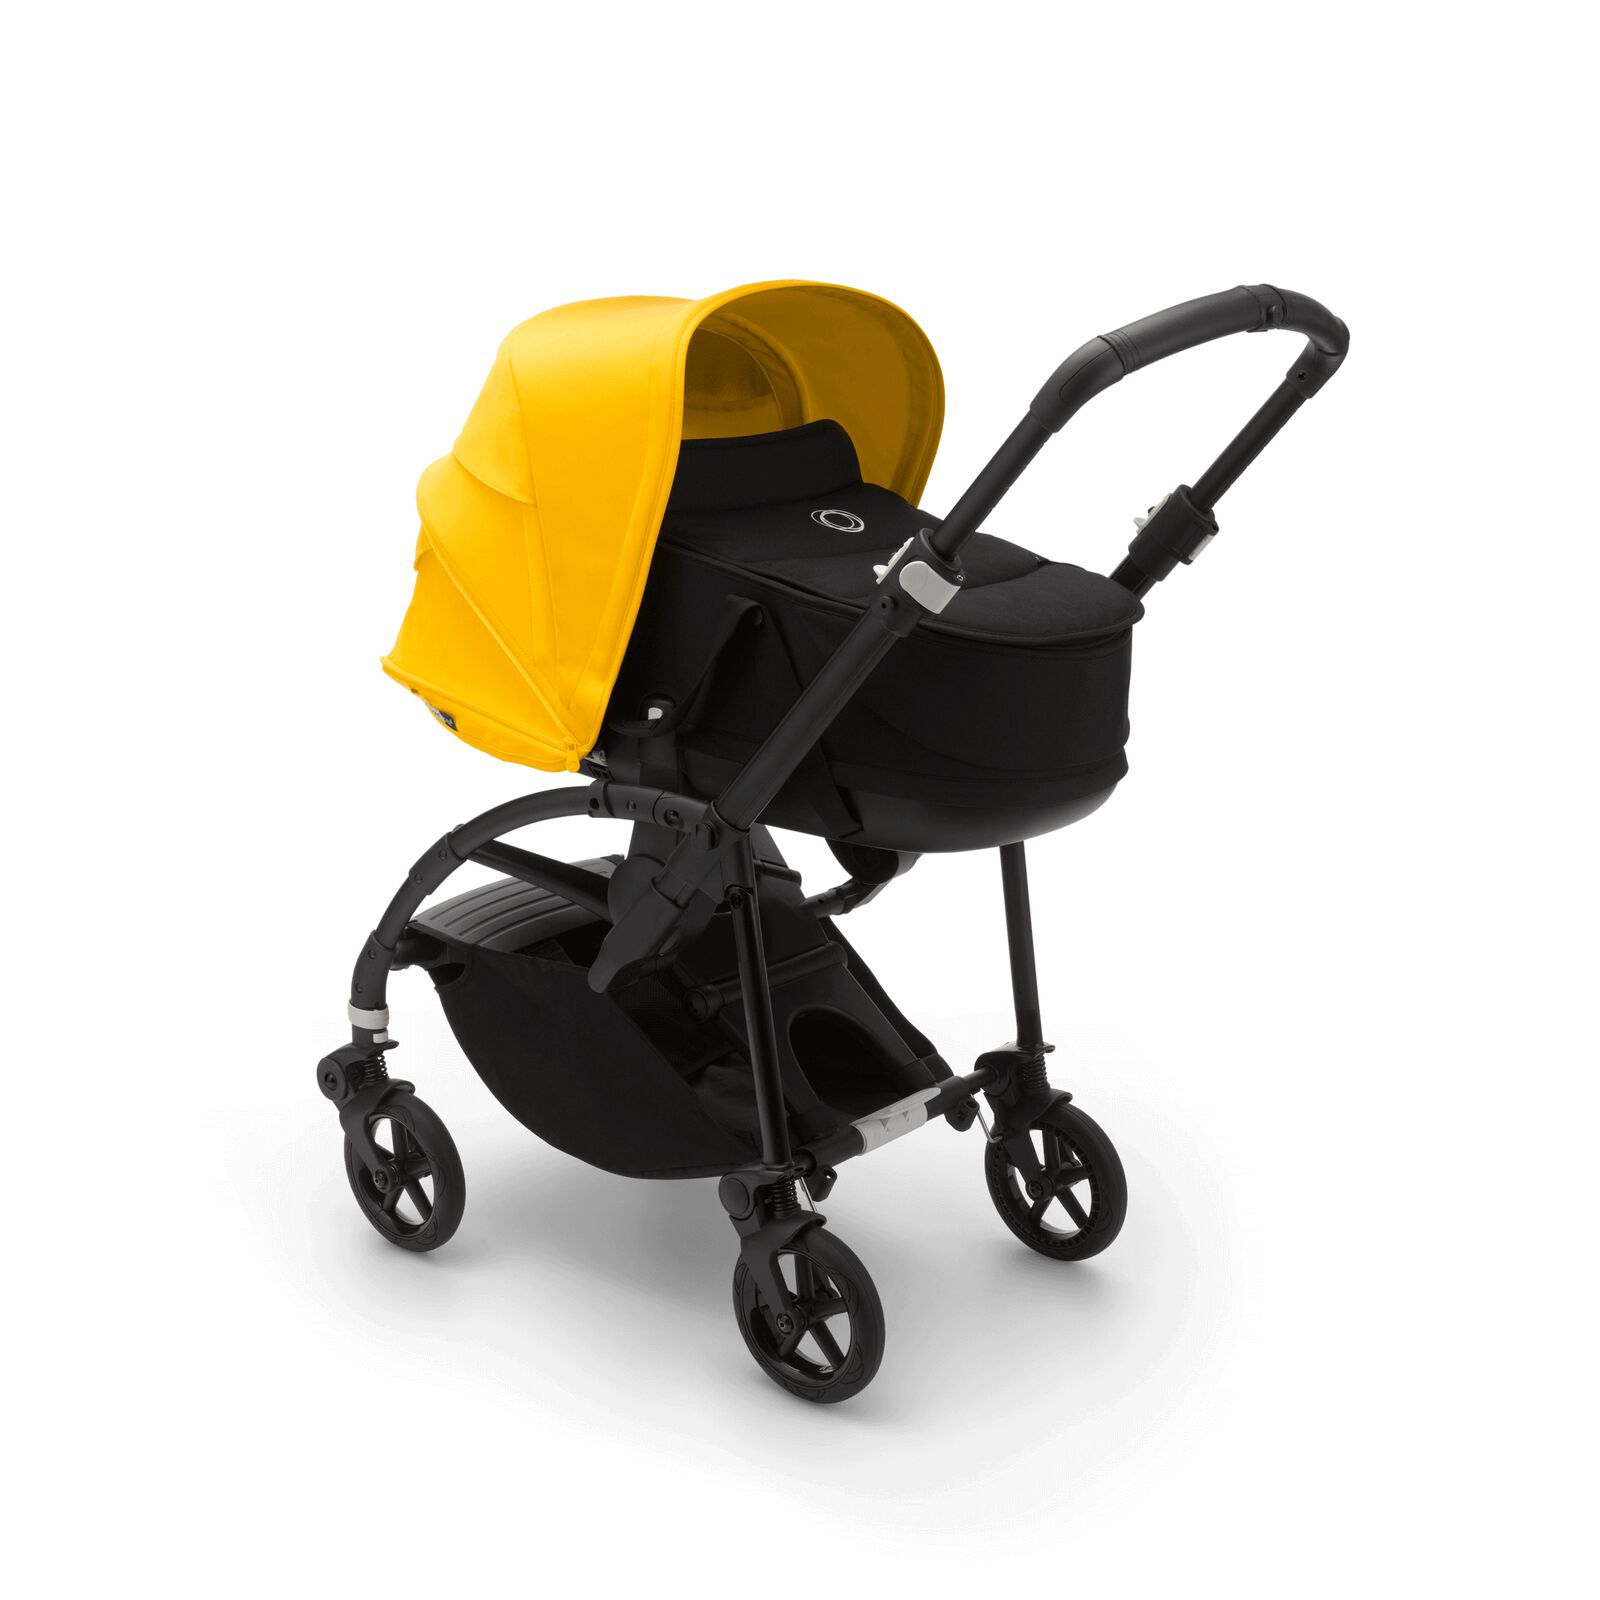 Bee 6 kinderwagen met wieg en stoel Lemon yellow black bekleding, black onderstel | Bugaboo